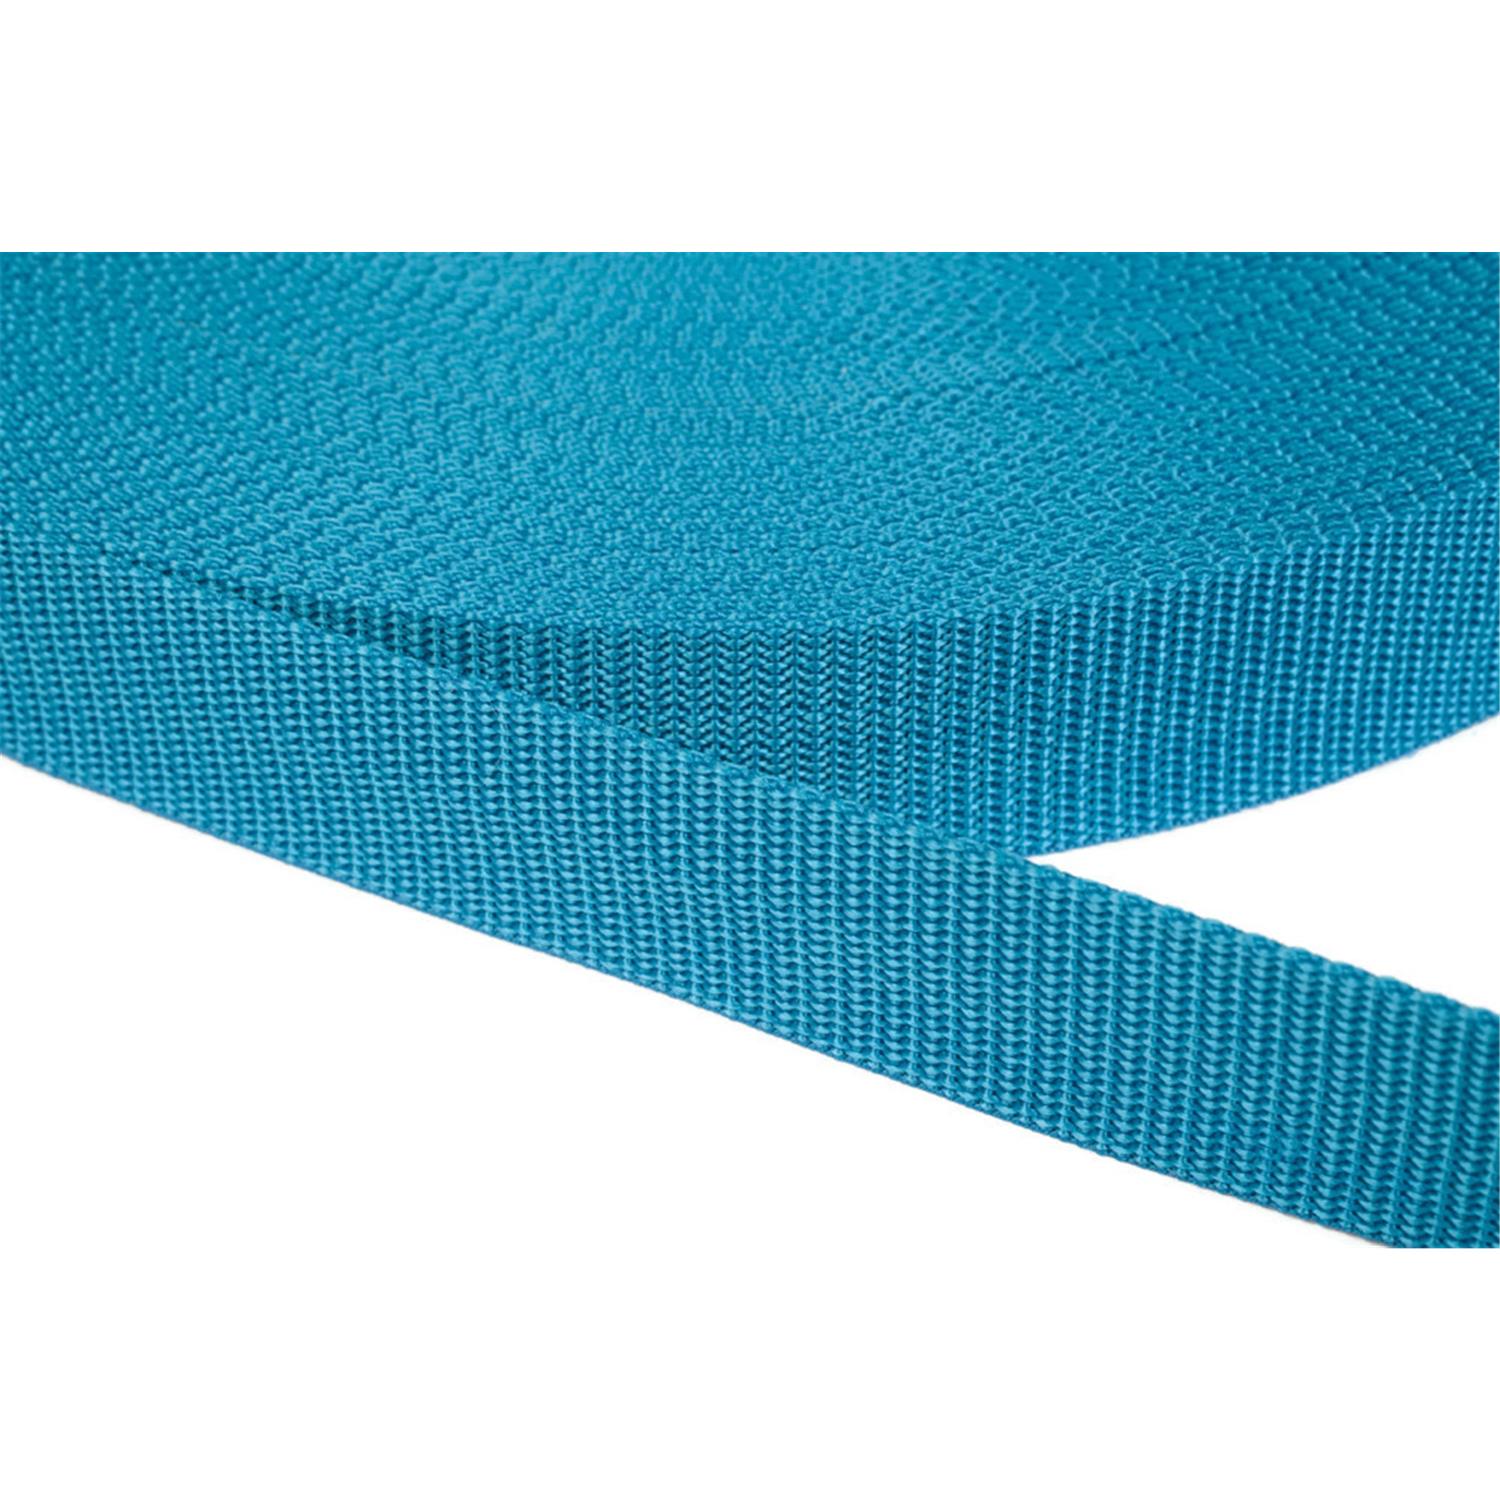 Gurtband 40mm breit aus Polypropylen in 41 Farben 29 - türkis 6 Meter